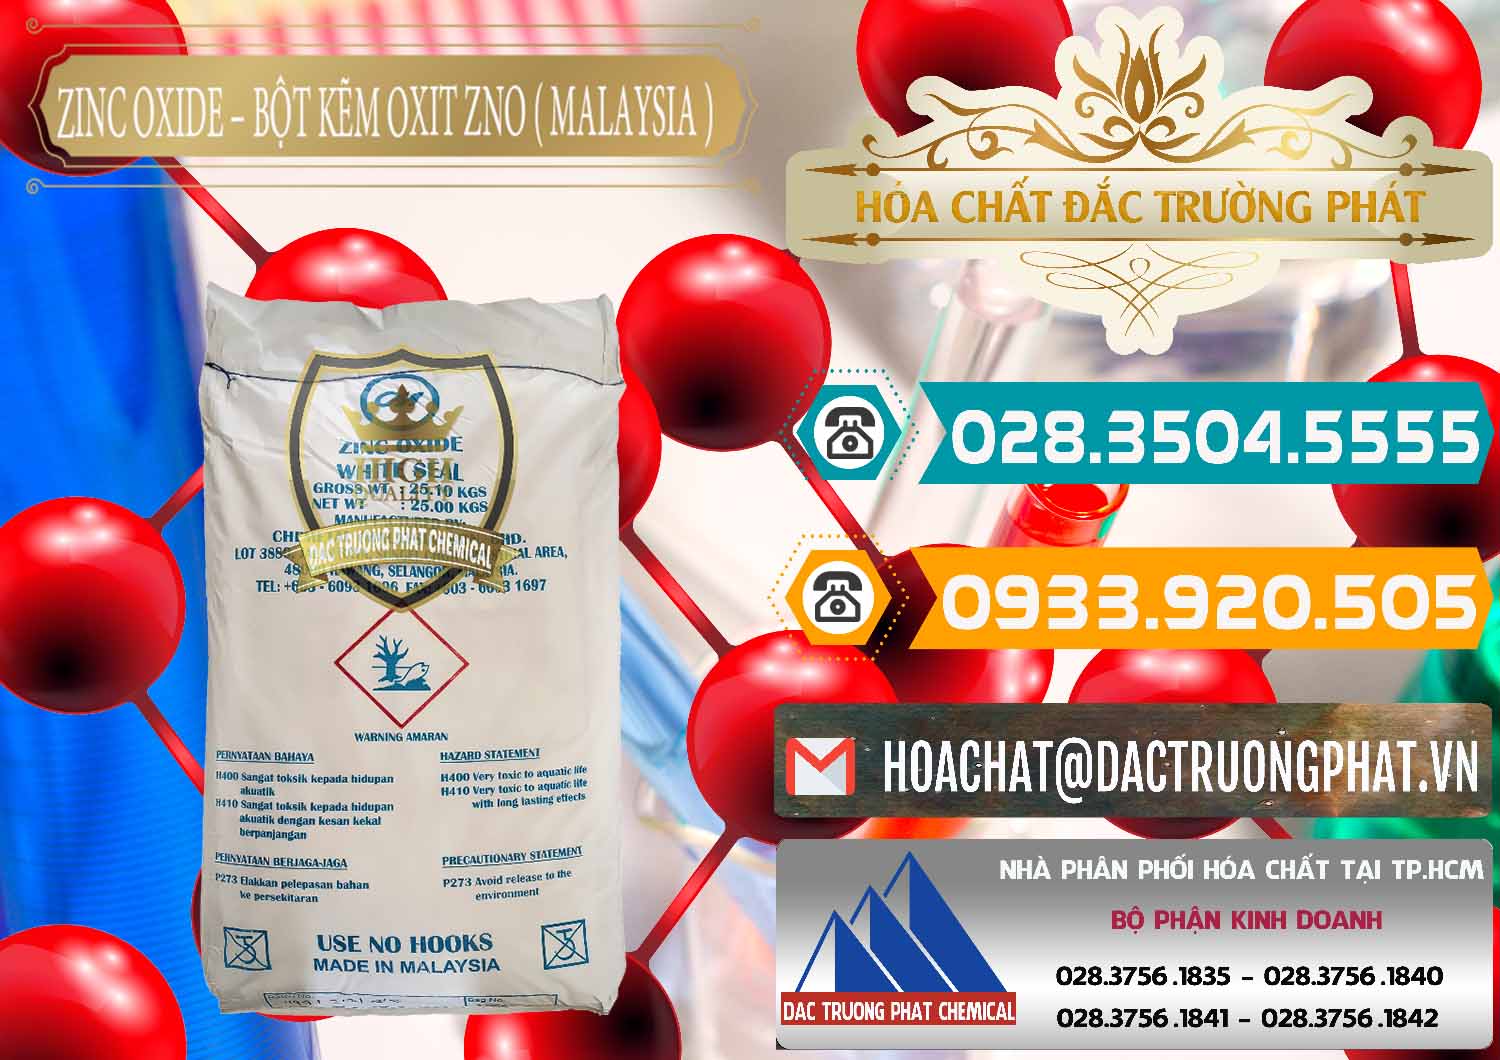 Công ty chuyên cung cấp & bán Zinc Oxide - Bột Kẽm Oxit ZNO Malaysia - 0179 - Nơi chuyên phân phối & bán hóa chất tại TP.HCM - congtyhoachat.vn